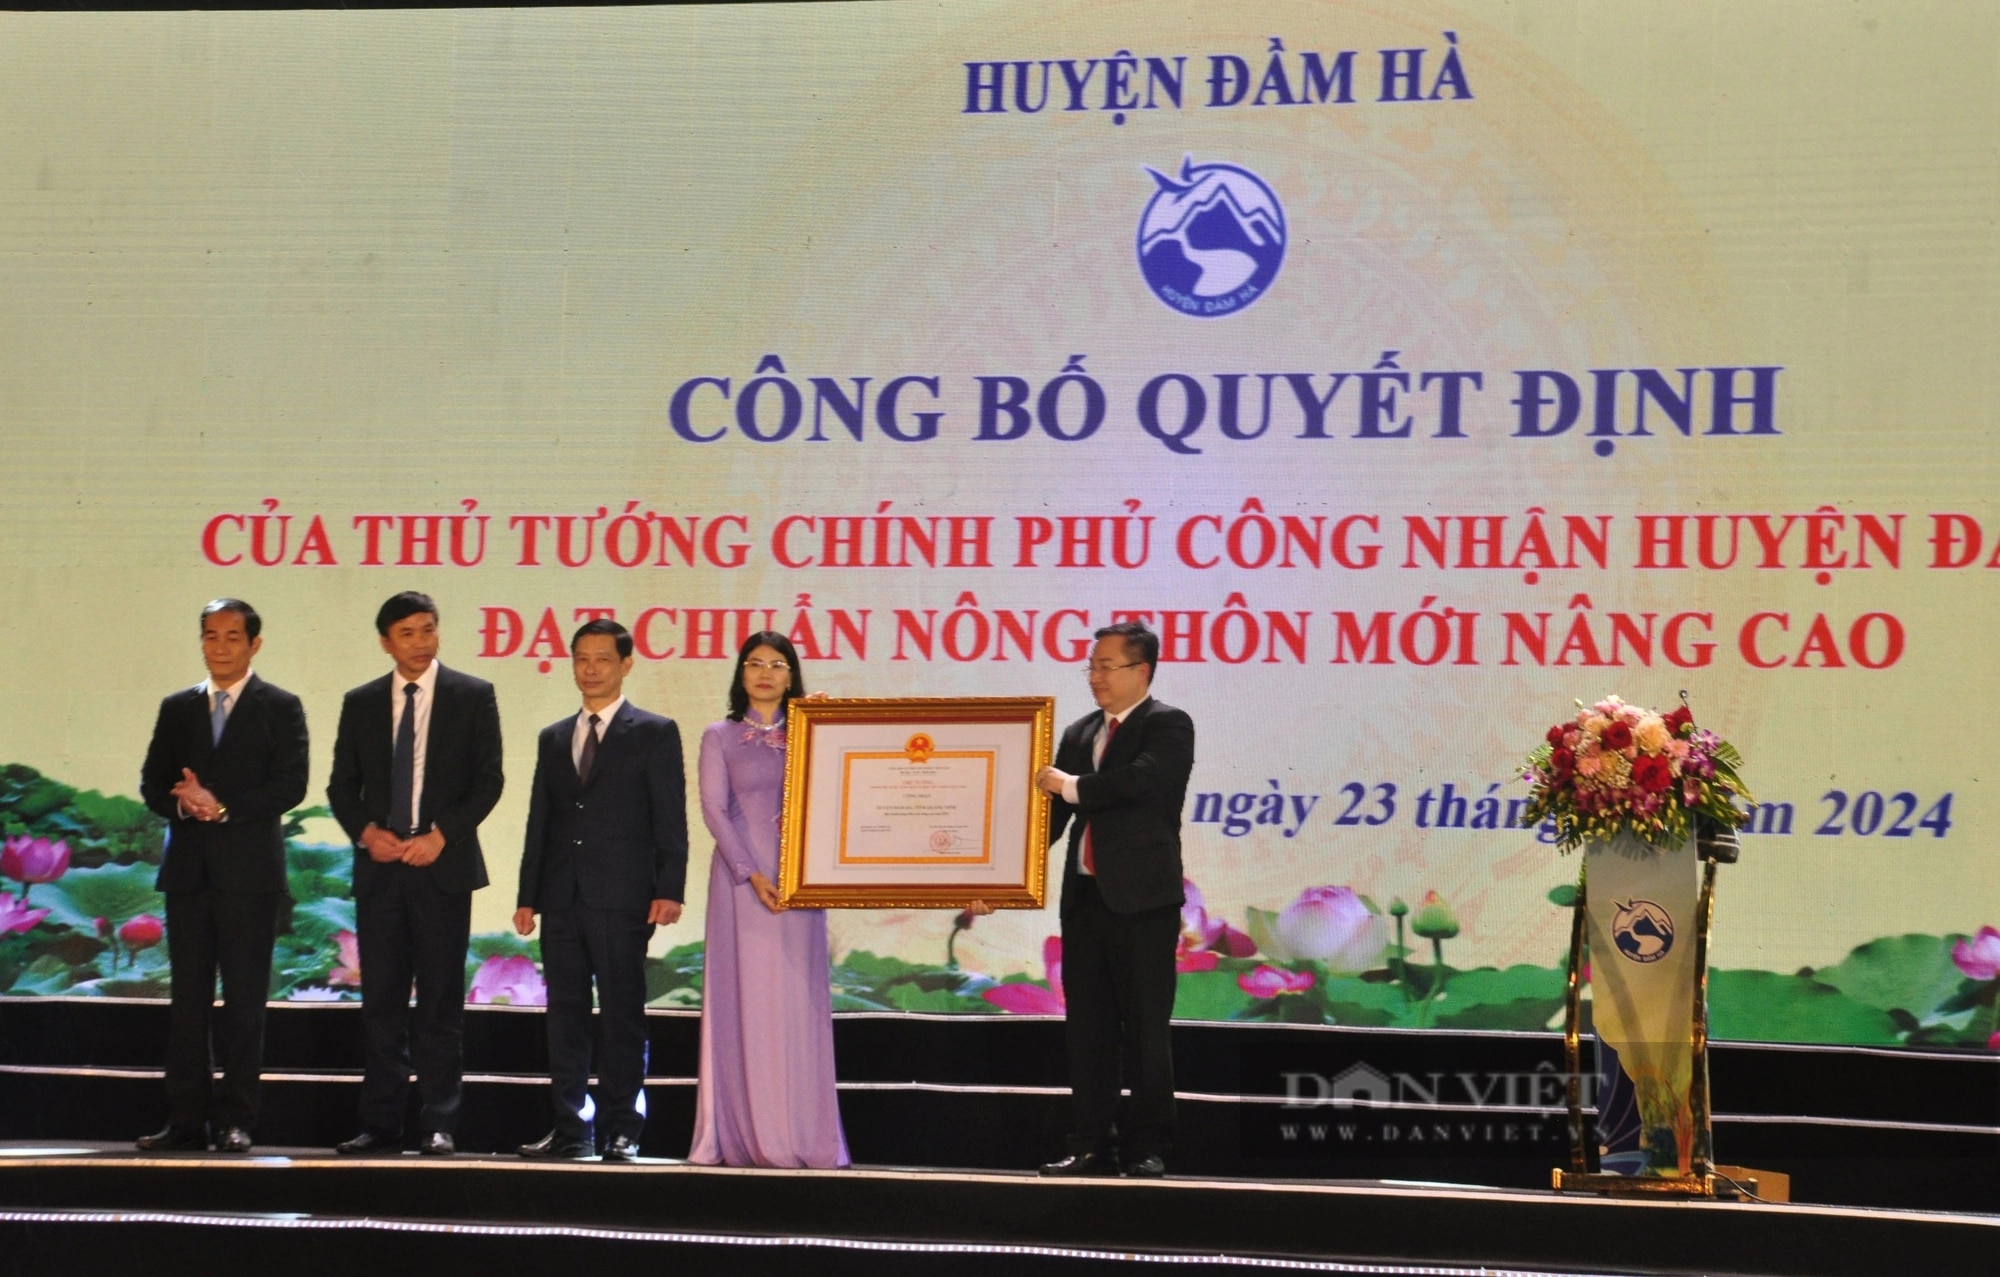 Huyện đầu tiên của cả nước đạt chuẩn nông thôn mới nâng cao là một huyện giàu truyền thống văn hóa của tỉnh Quảng Ninh- Ảnh 2.